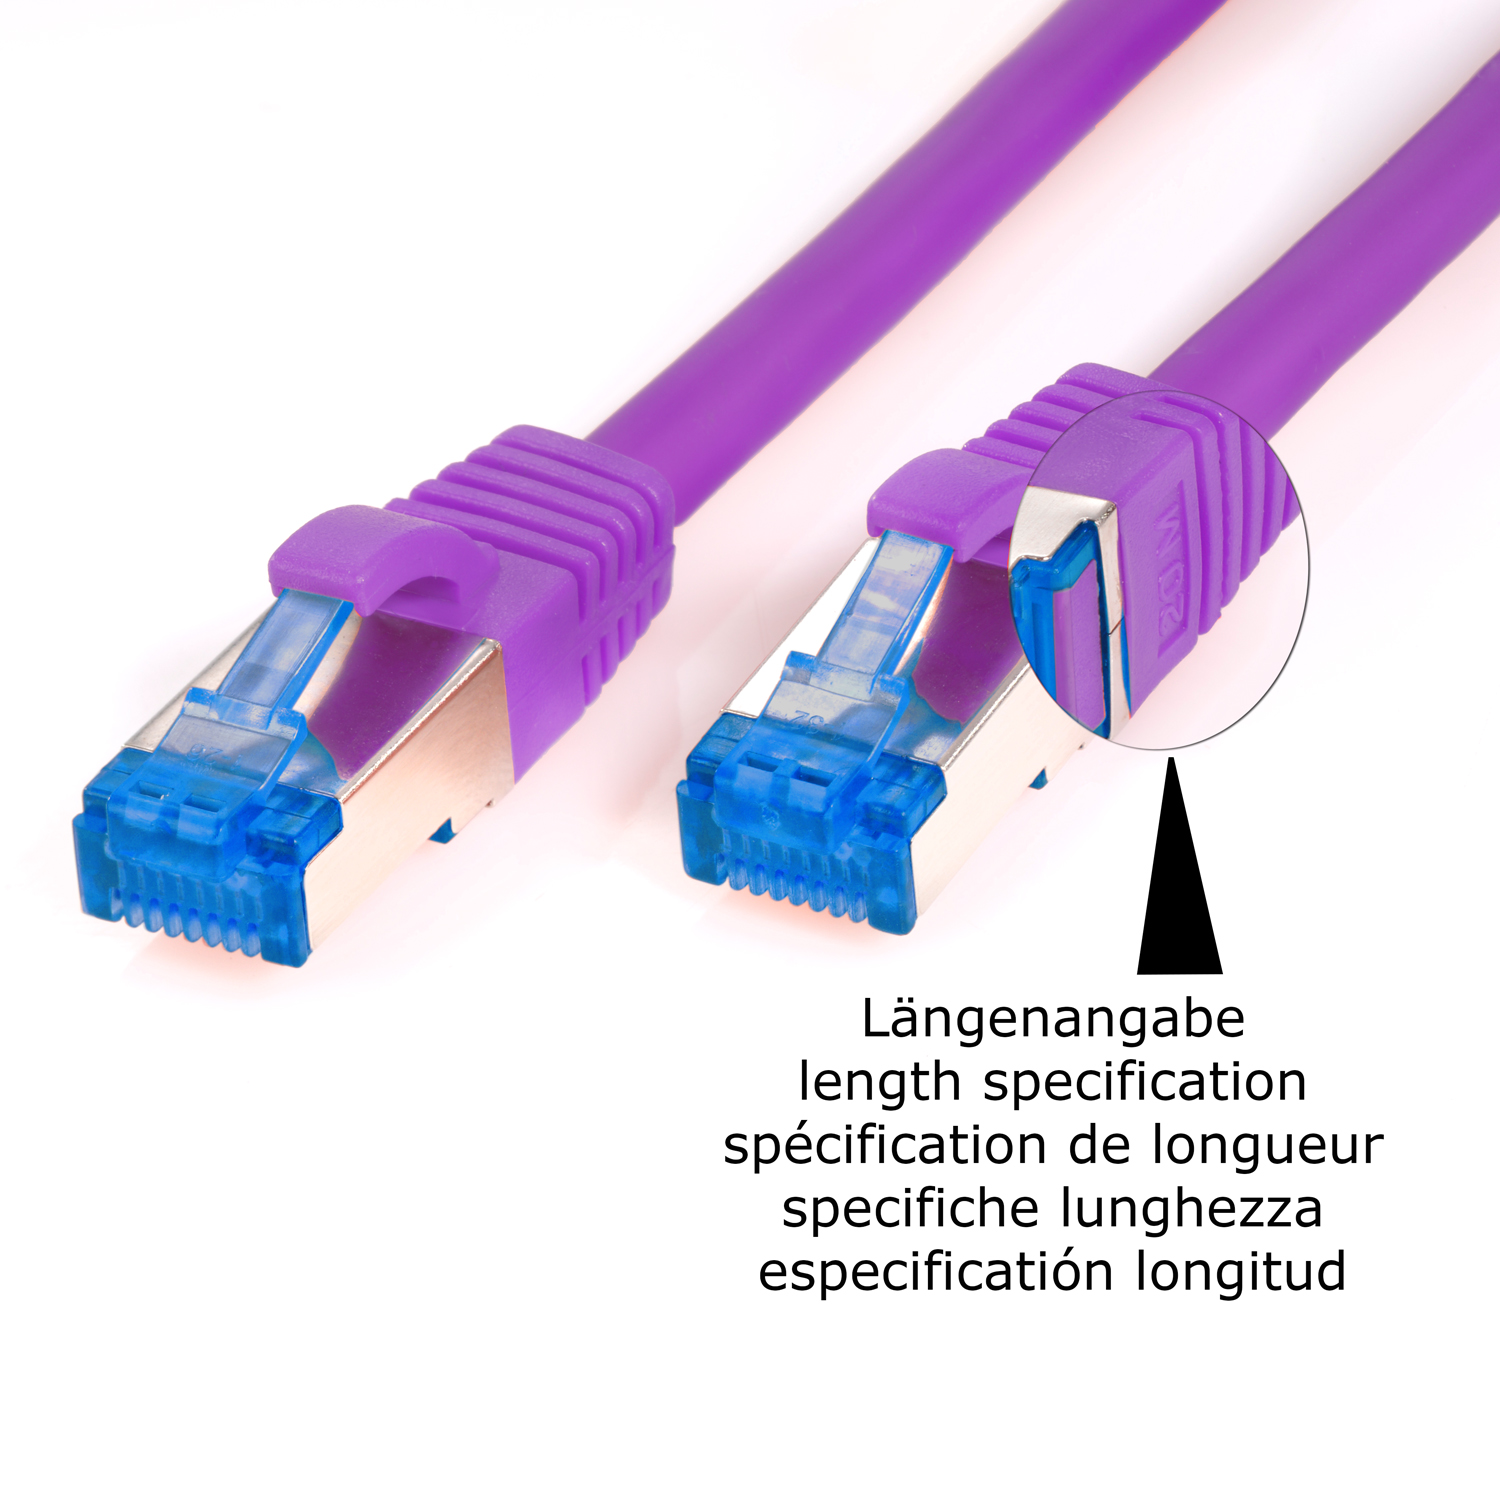 Patchkabel / Netzwerkkabel, violett, 10GBit, 10m m S/FTP 10 Netzwerkkabel TPFNET